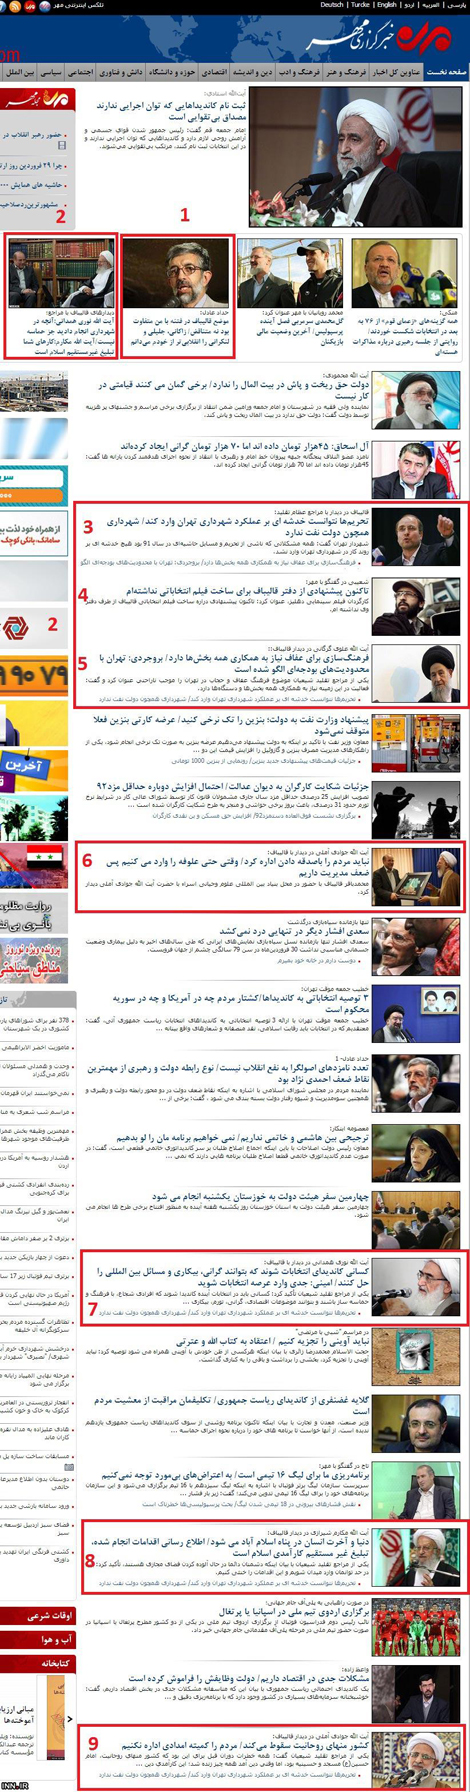  خودکشی خبرگزاری سازمان تبلیغات اسلامی برای قالیباف! 